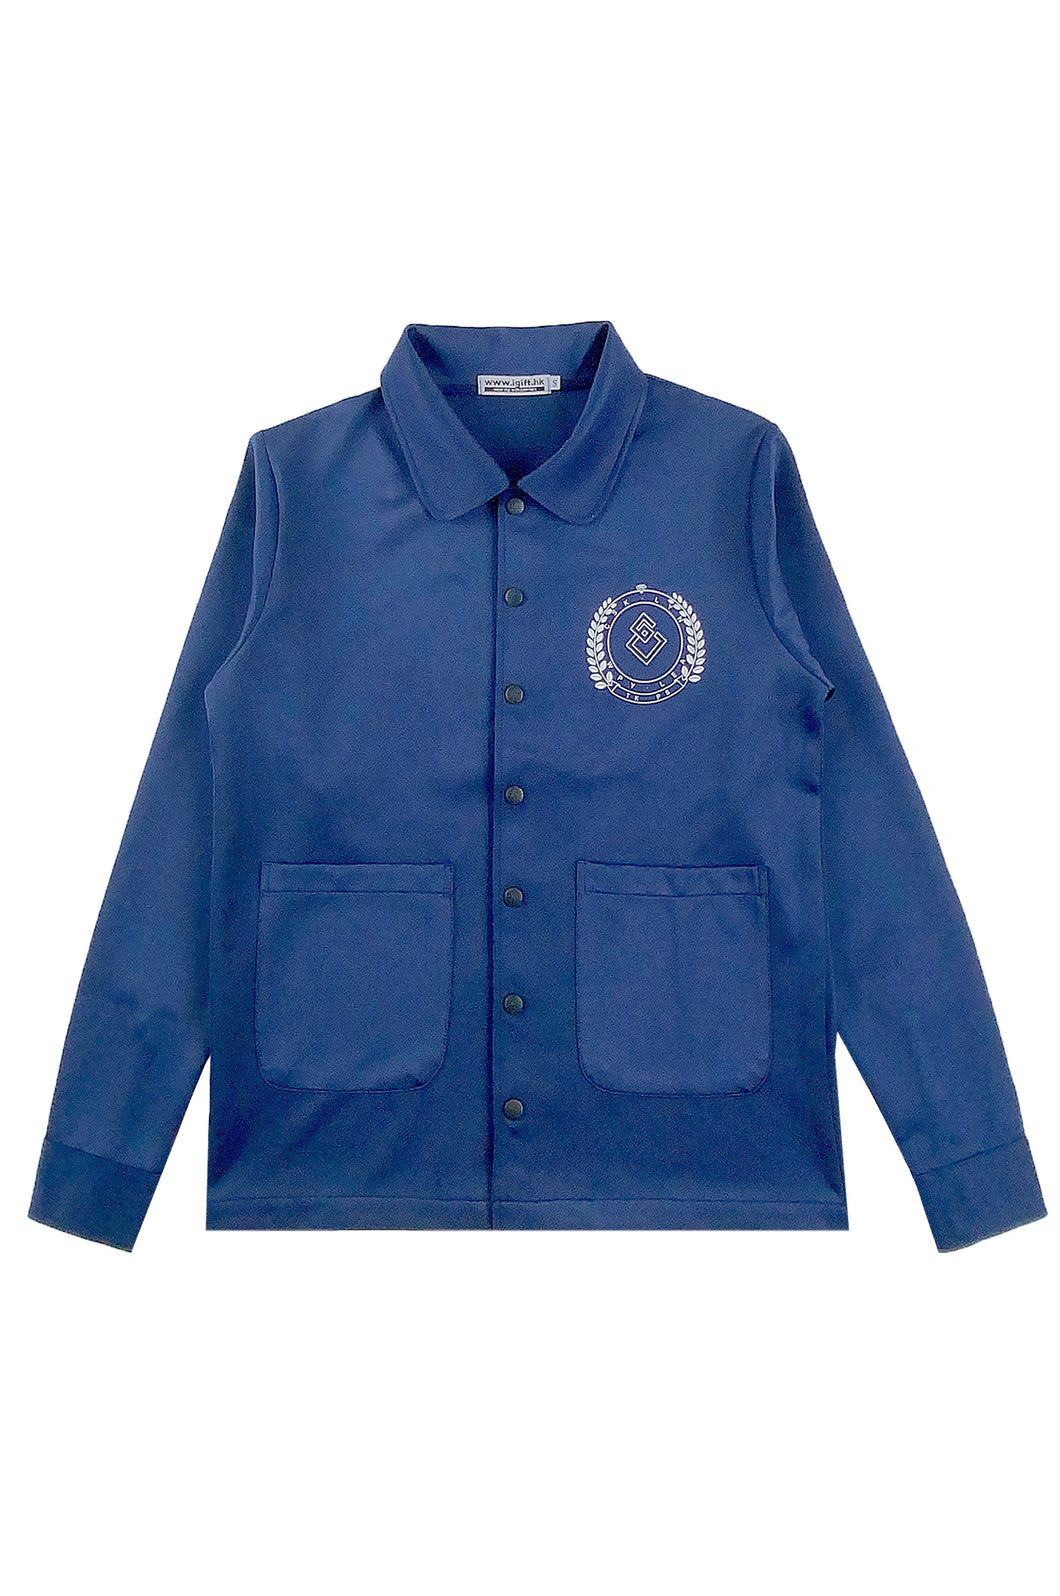 網上下單訂購藍色長袖外套  印花LOGO  J1040